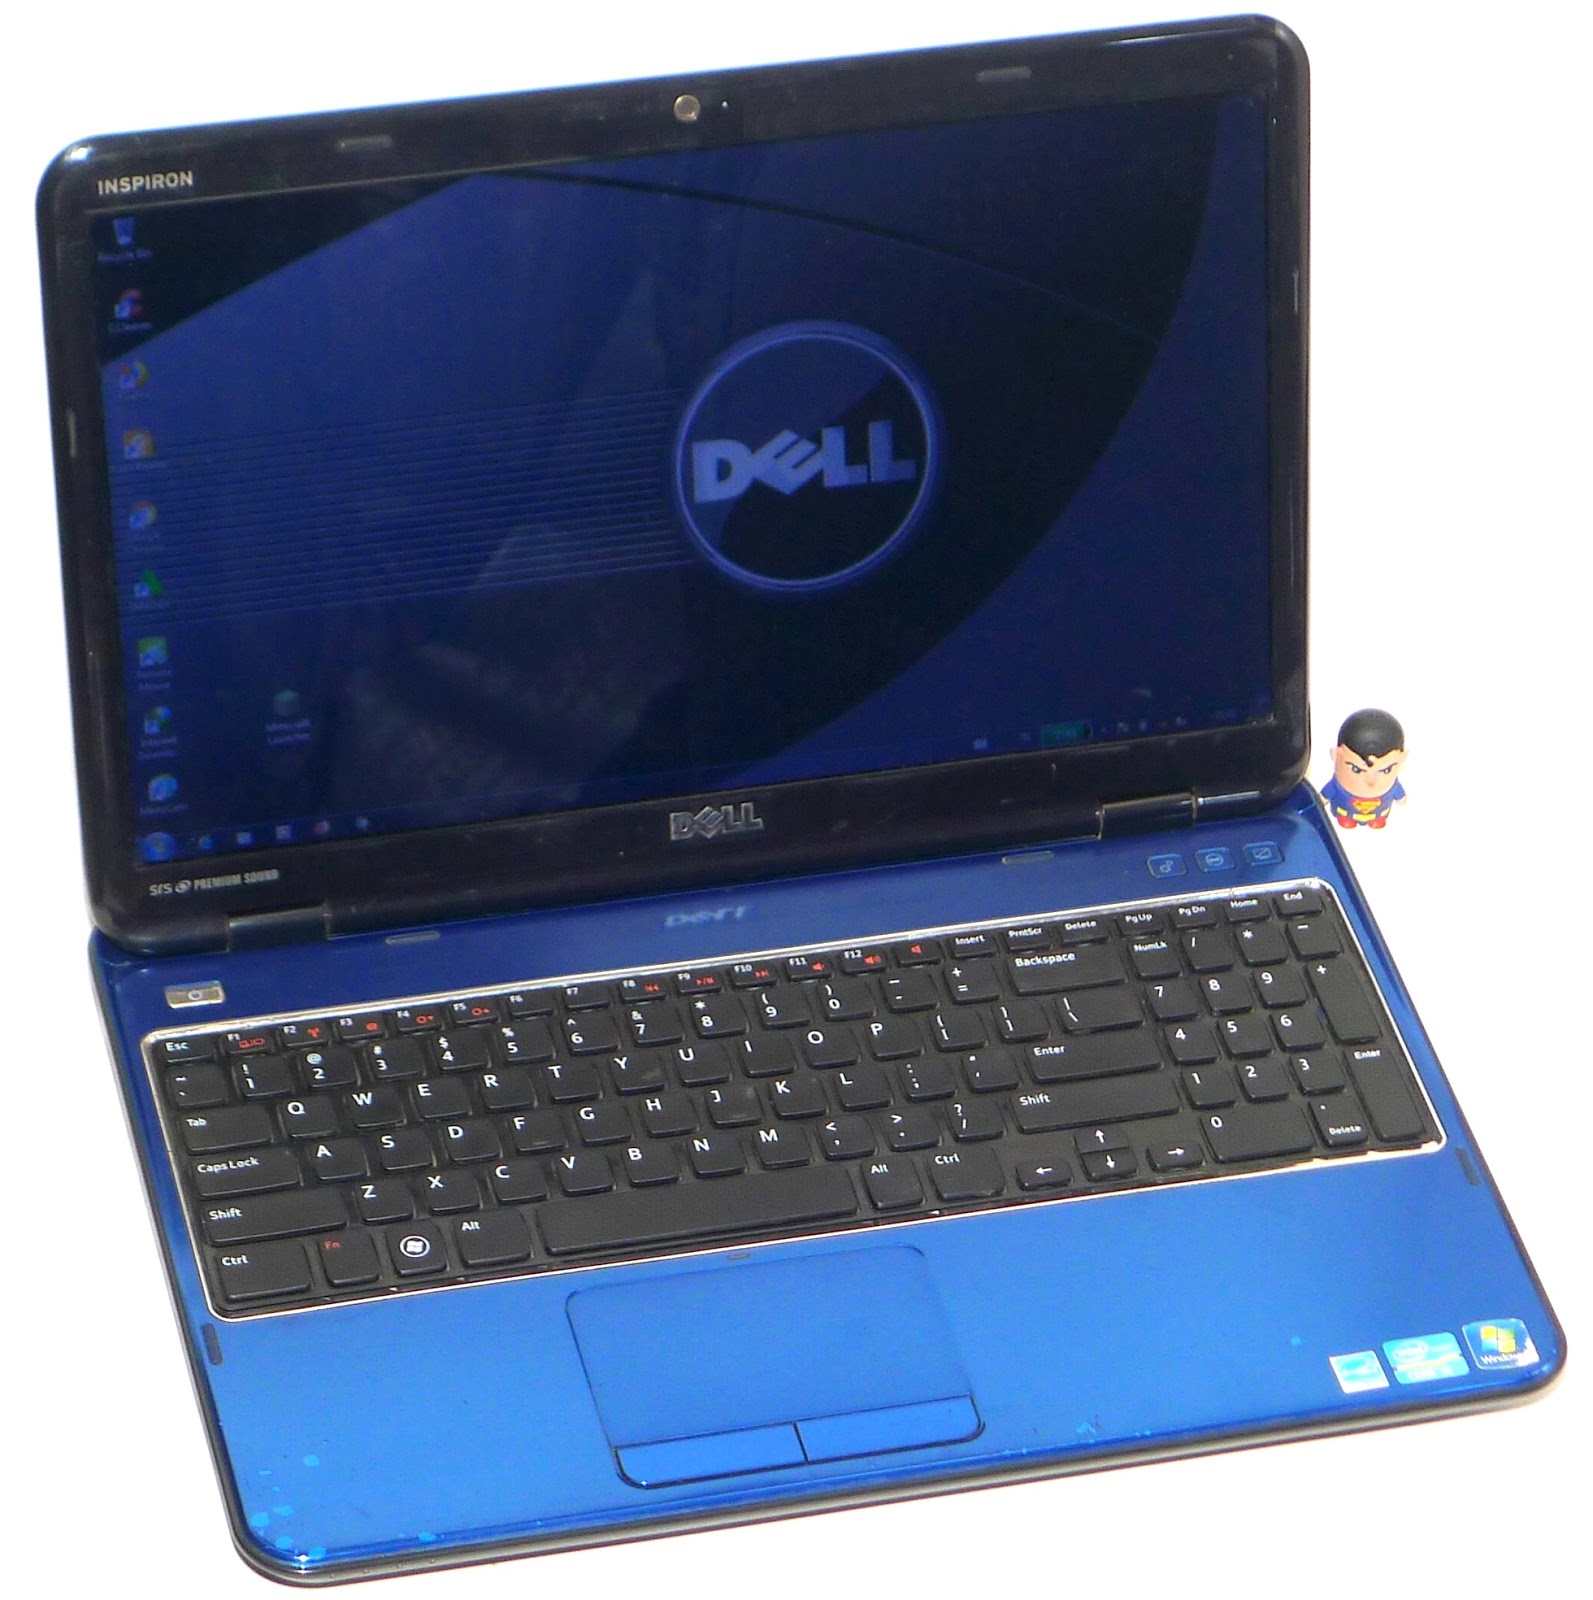 Jual Laptop Dell Inspiron N5110 Core I5 Second Jual Beli Laptop Bekas Kamera Service Sparepart Di Malang